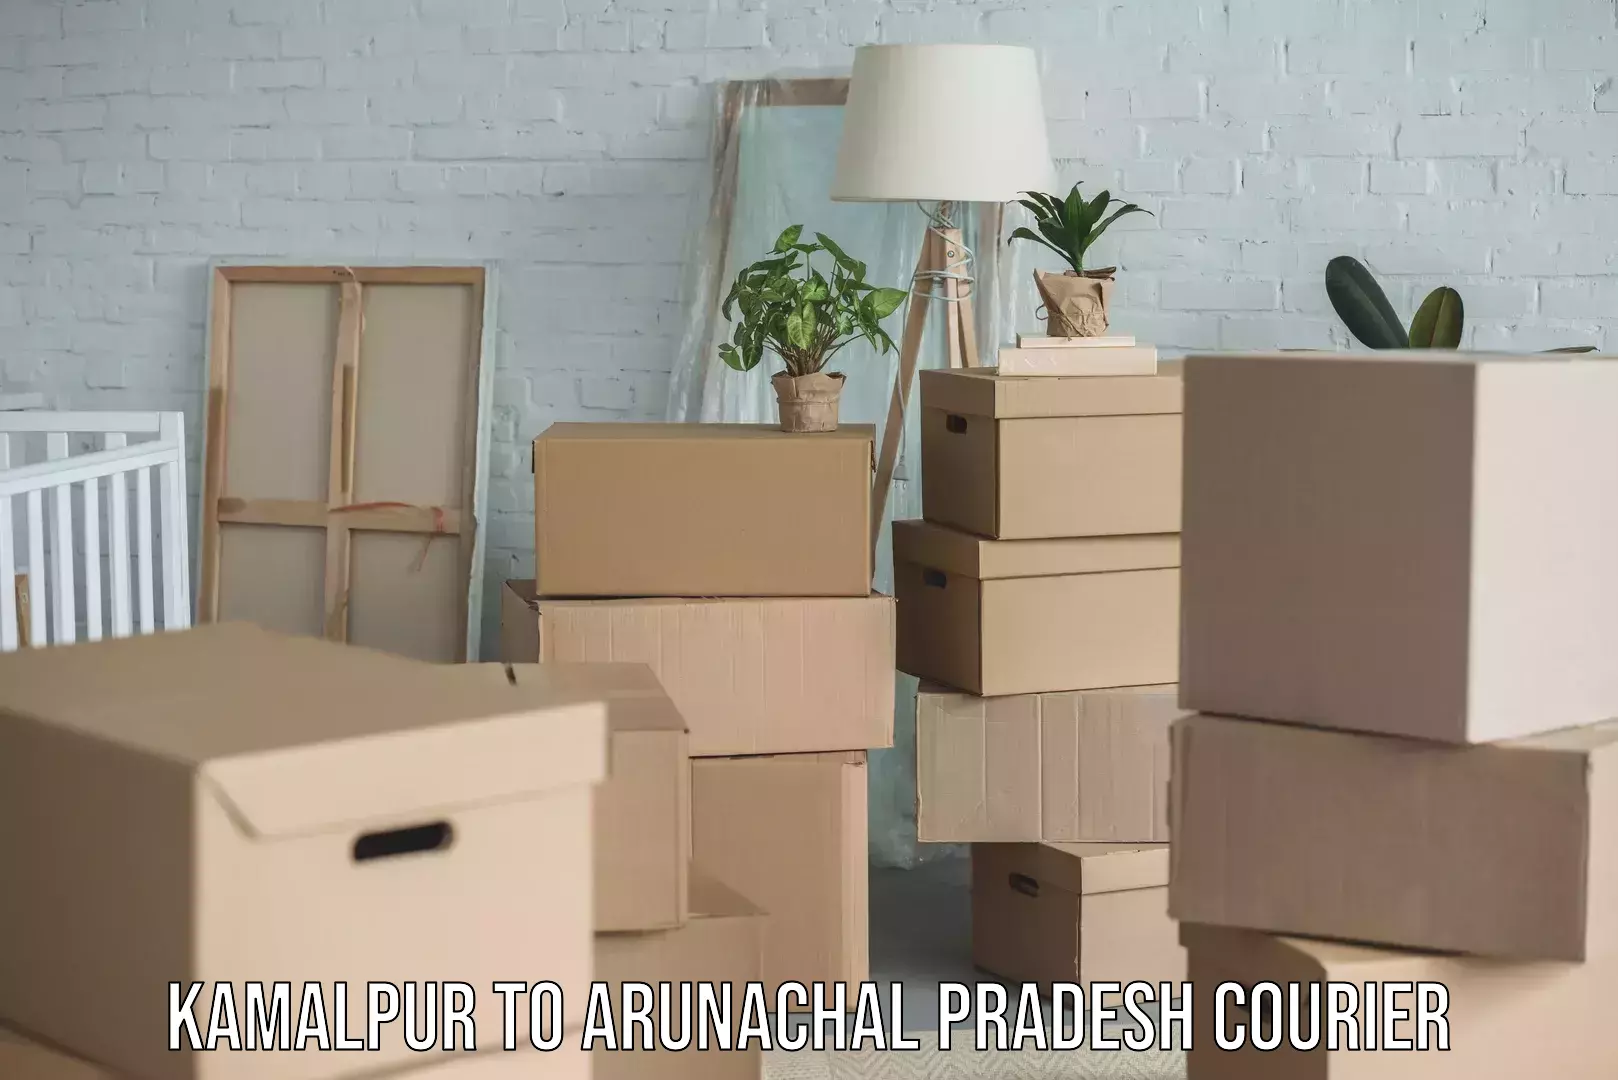 Weekend courier service Kamalpur to Arunachal Pradesh